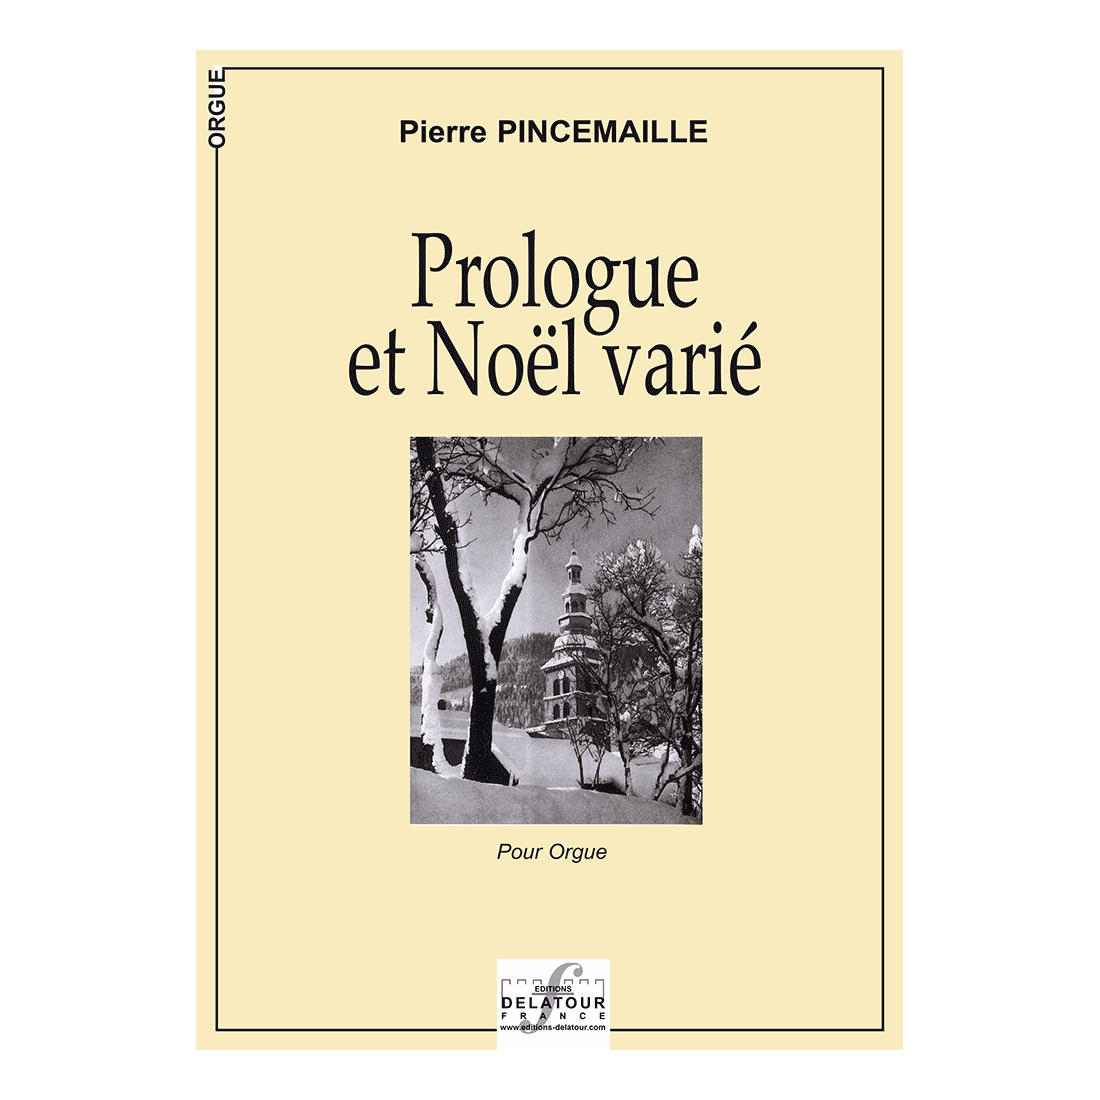 Prologue et Noël varié for organ